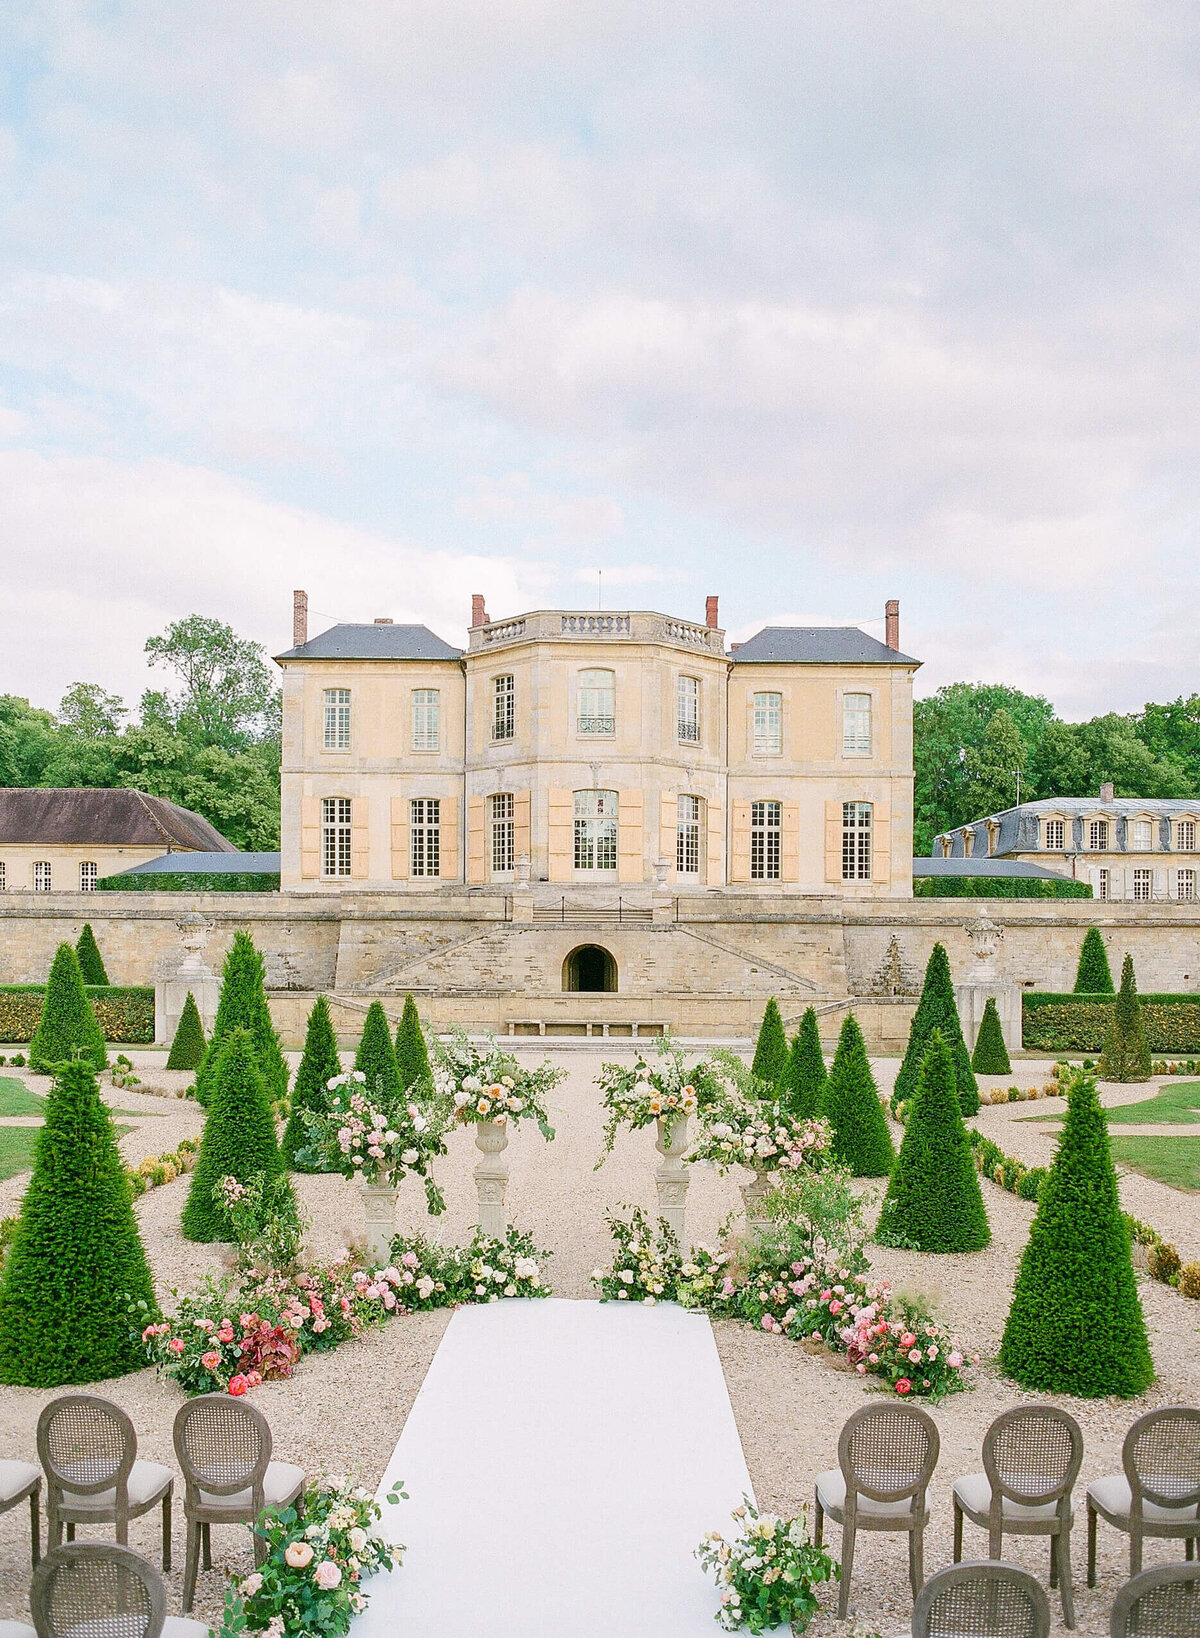 Chateau-de-Villette-wedding-florist-Floraison20